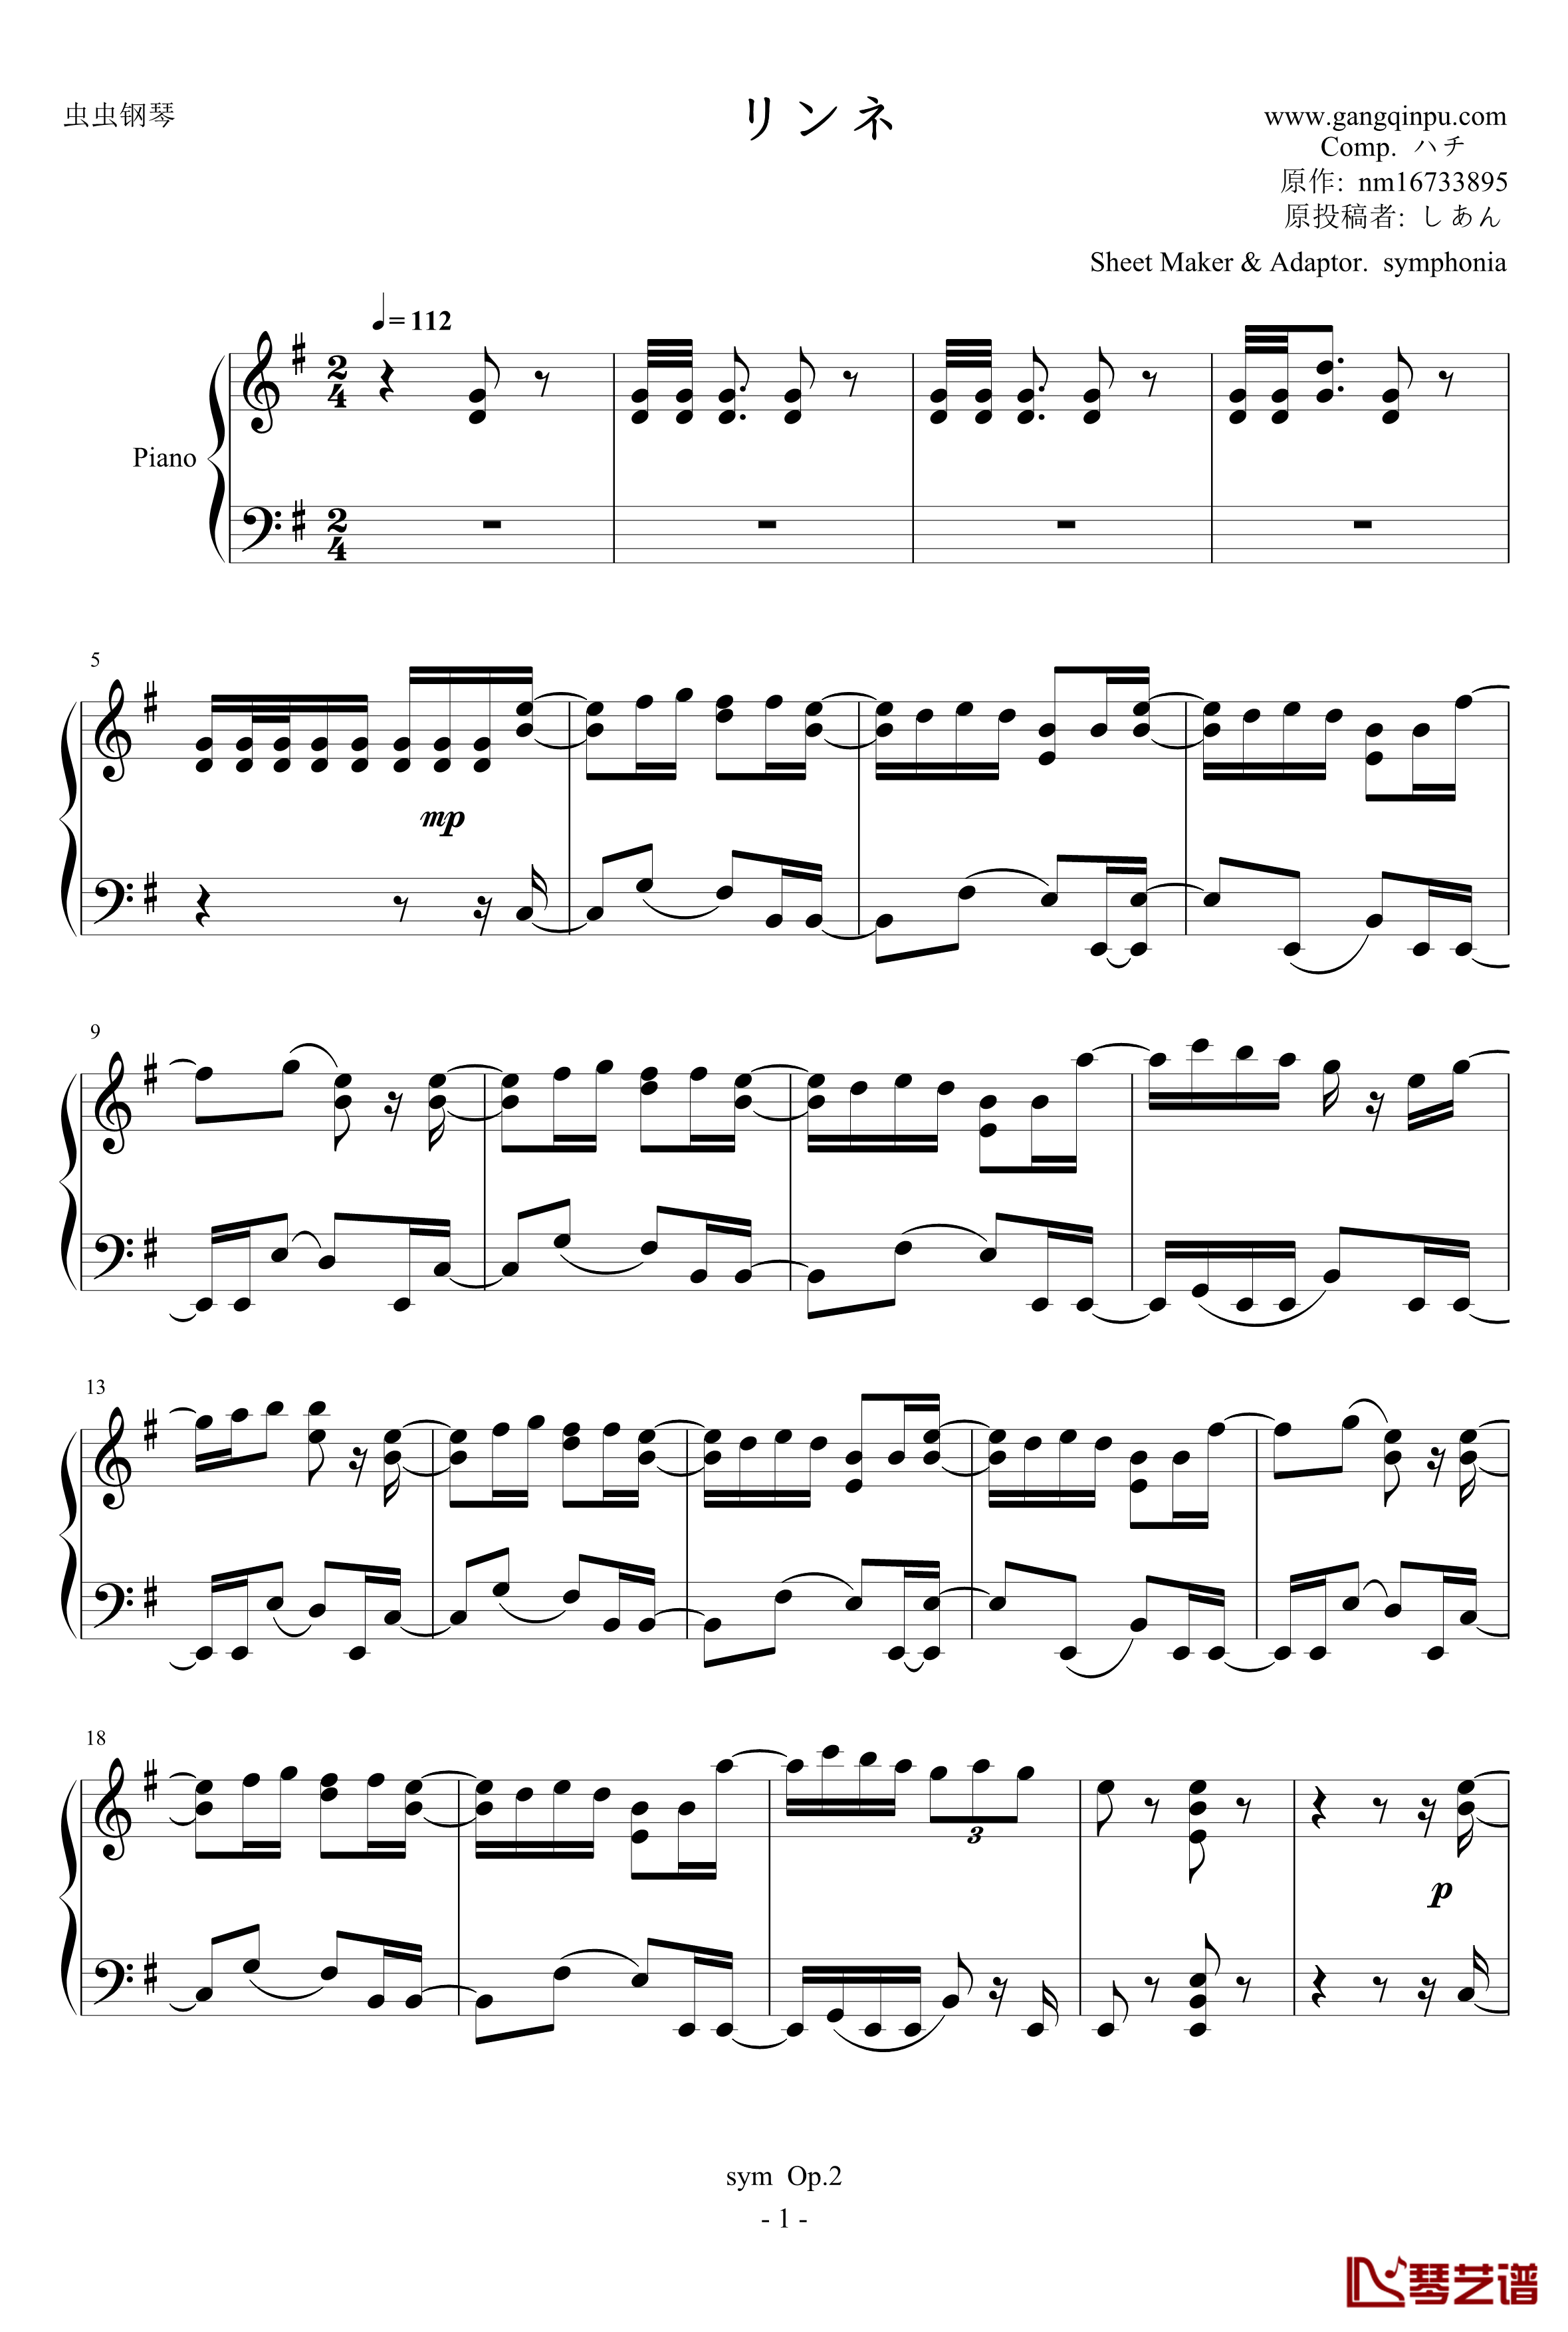 リンネ钢琴谱-piano.ver-ハチ1